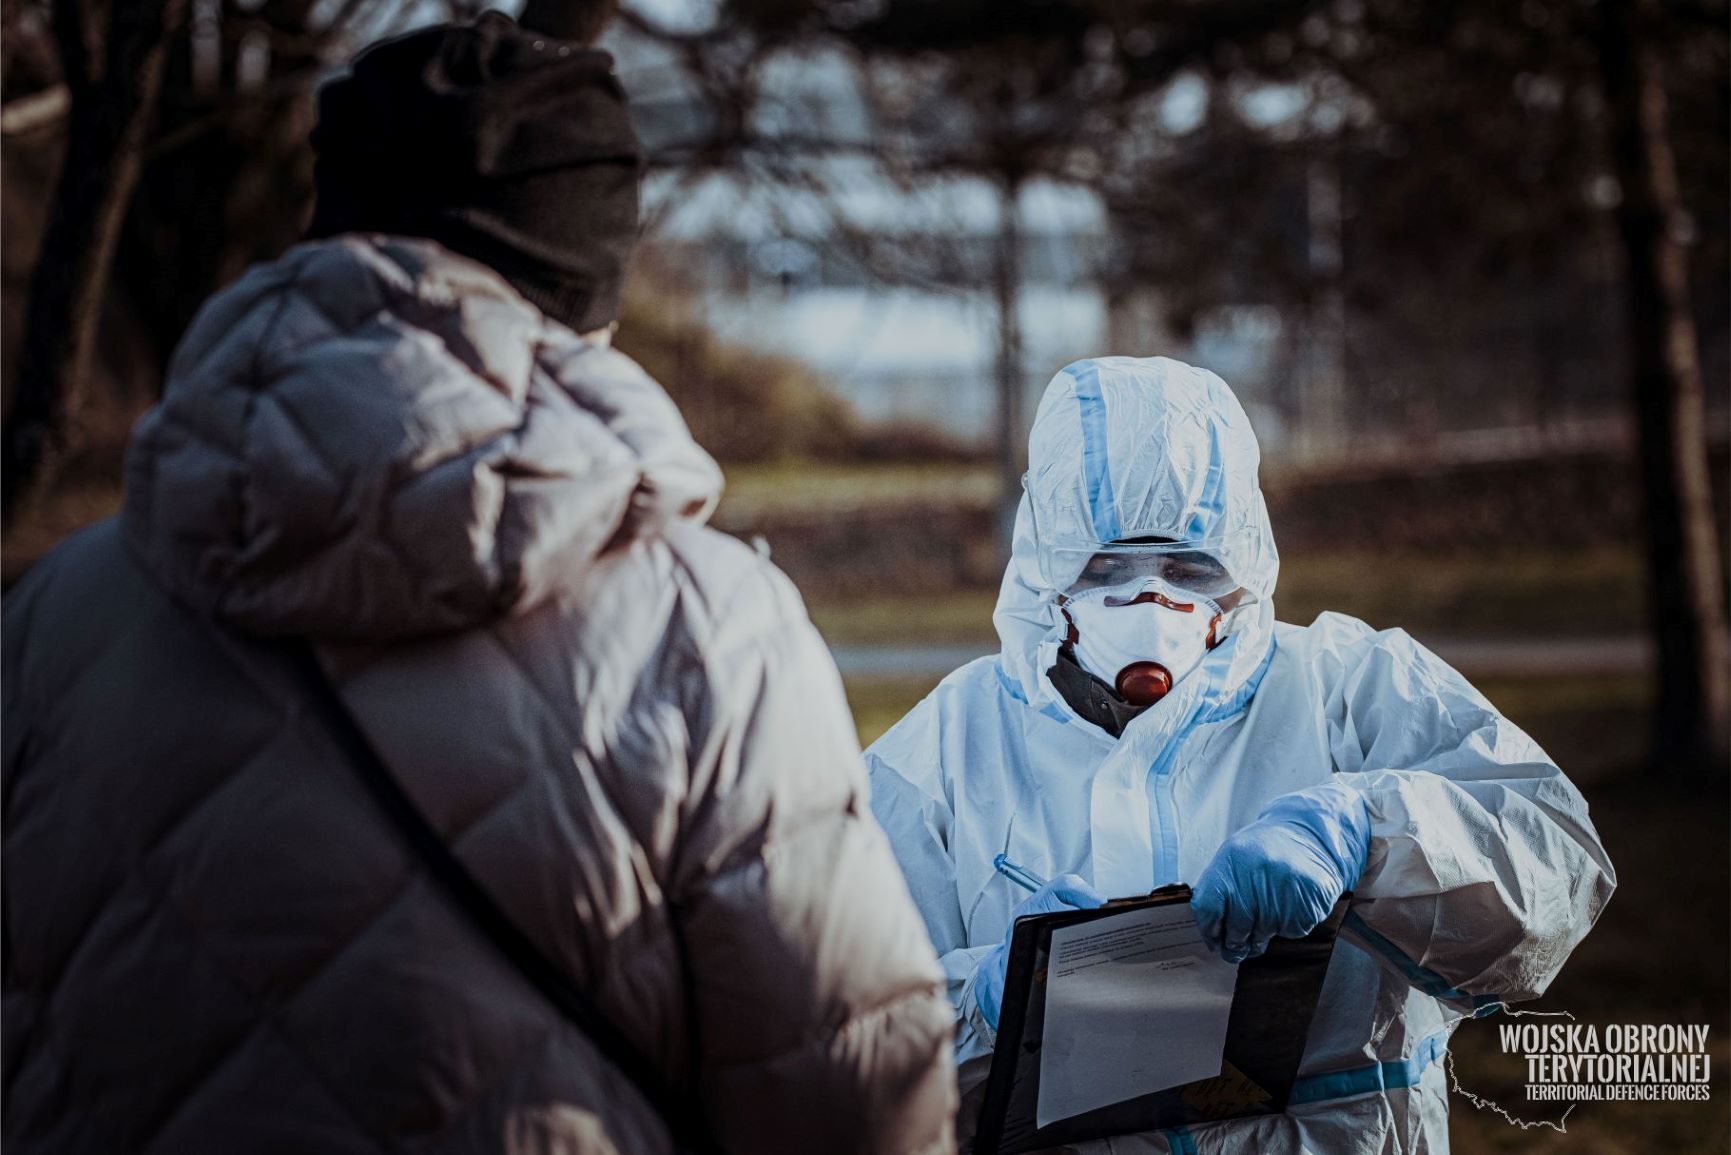 Województwo lubelskie: Terytorialsi nadal pomagają w związku z pandemią i stanem wyjątkowym - Zdjęcie główne